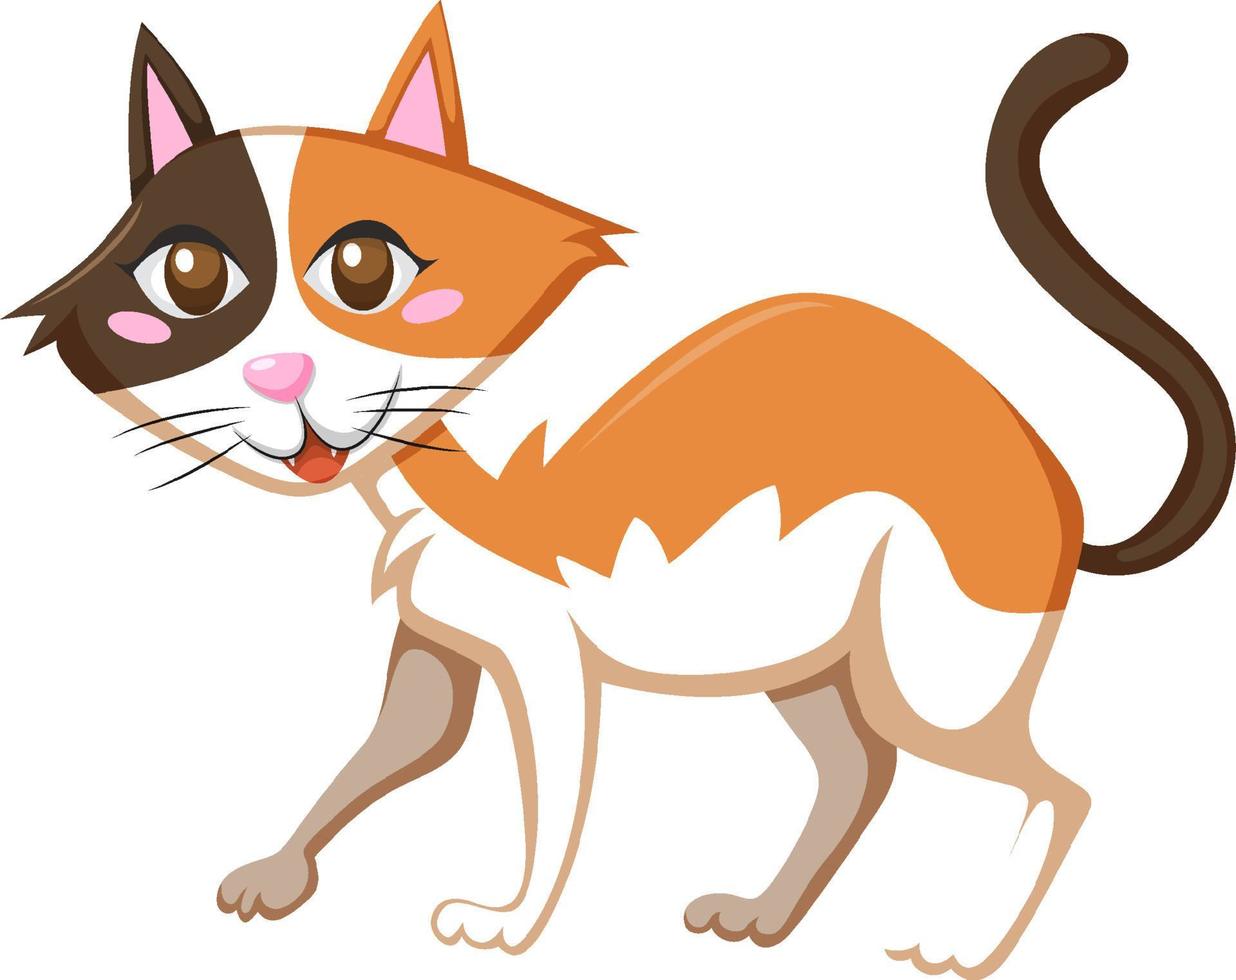 brun katt i tecknad stil vektor